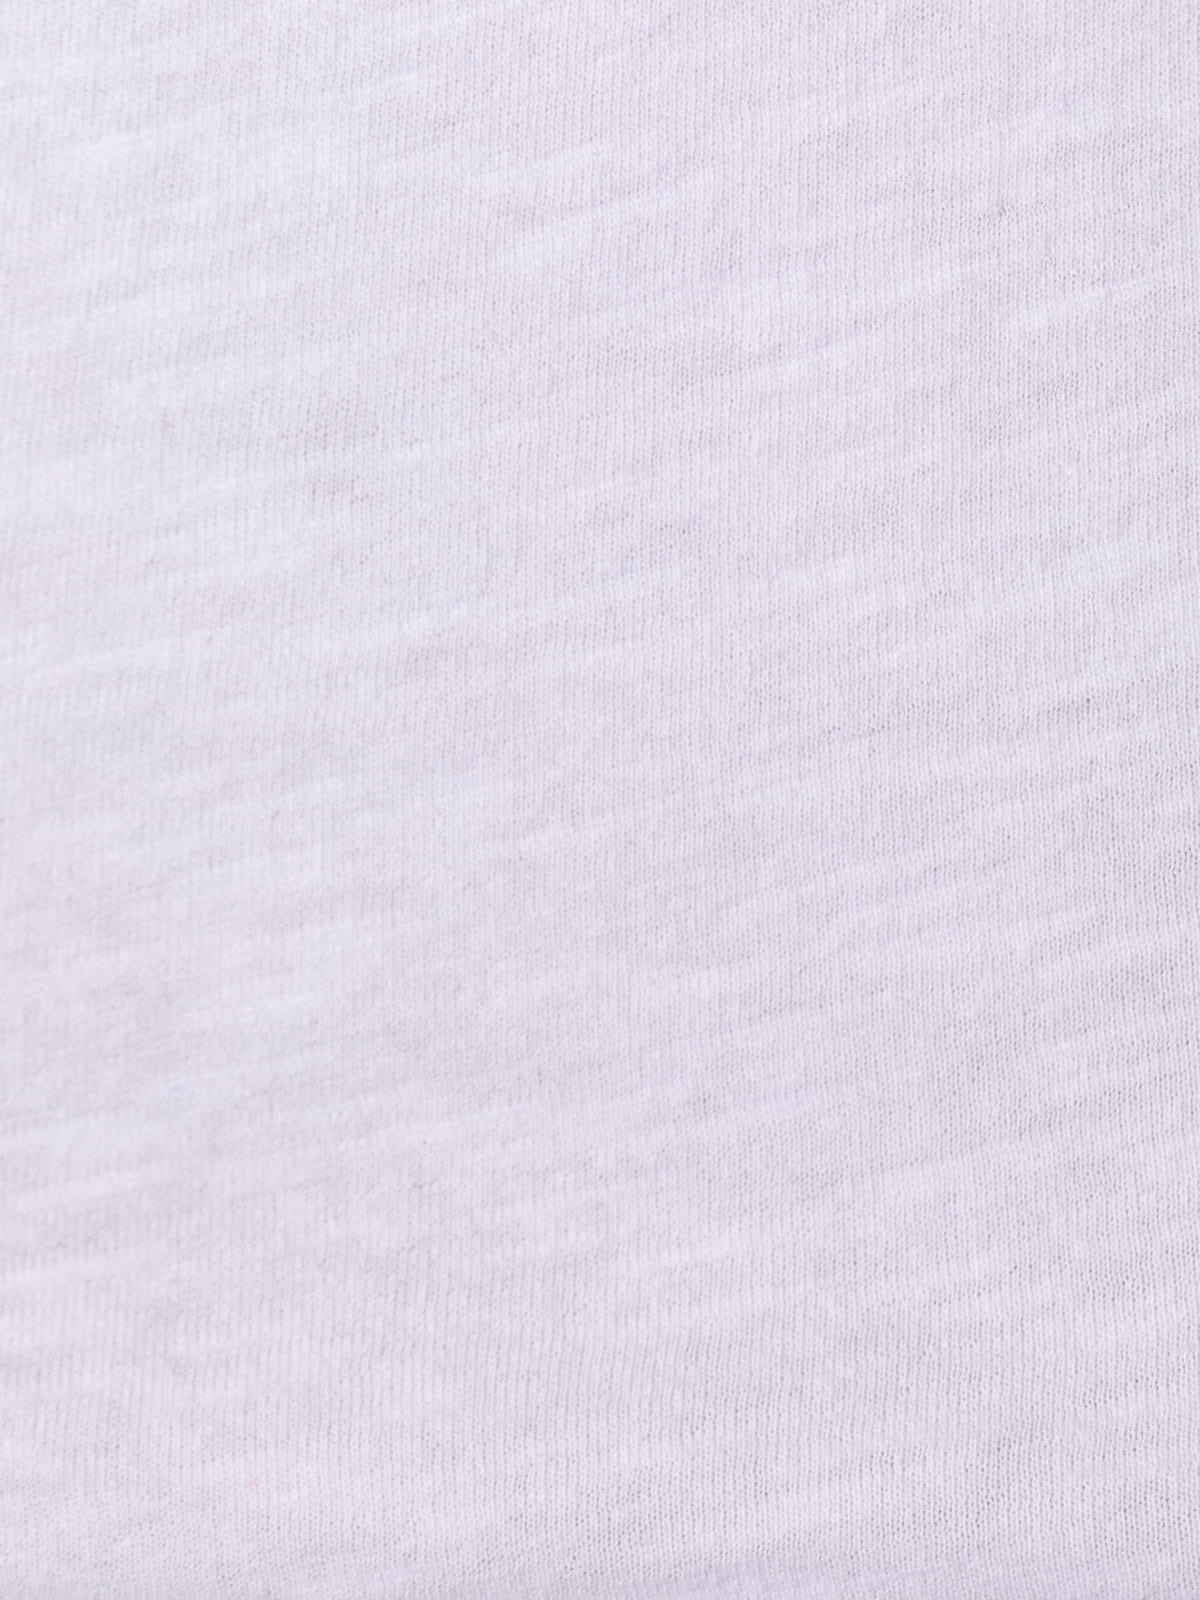 Camiseta cuello redondo 100% algodón color Blanco